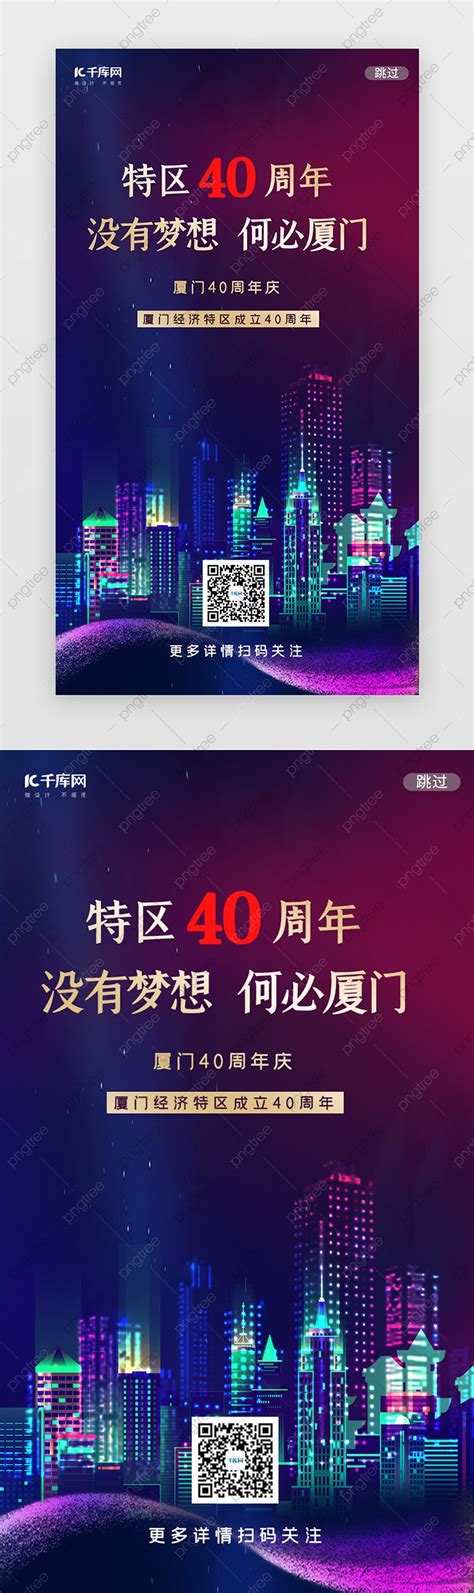 The 40th Anniversary Of Xiamen Special Economic Zone Splash Screen